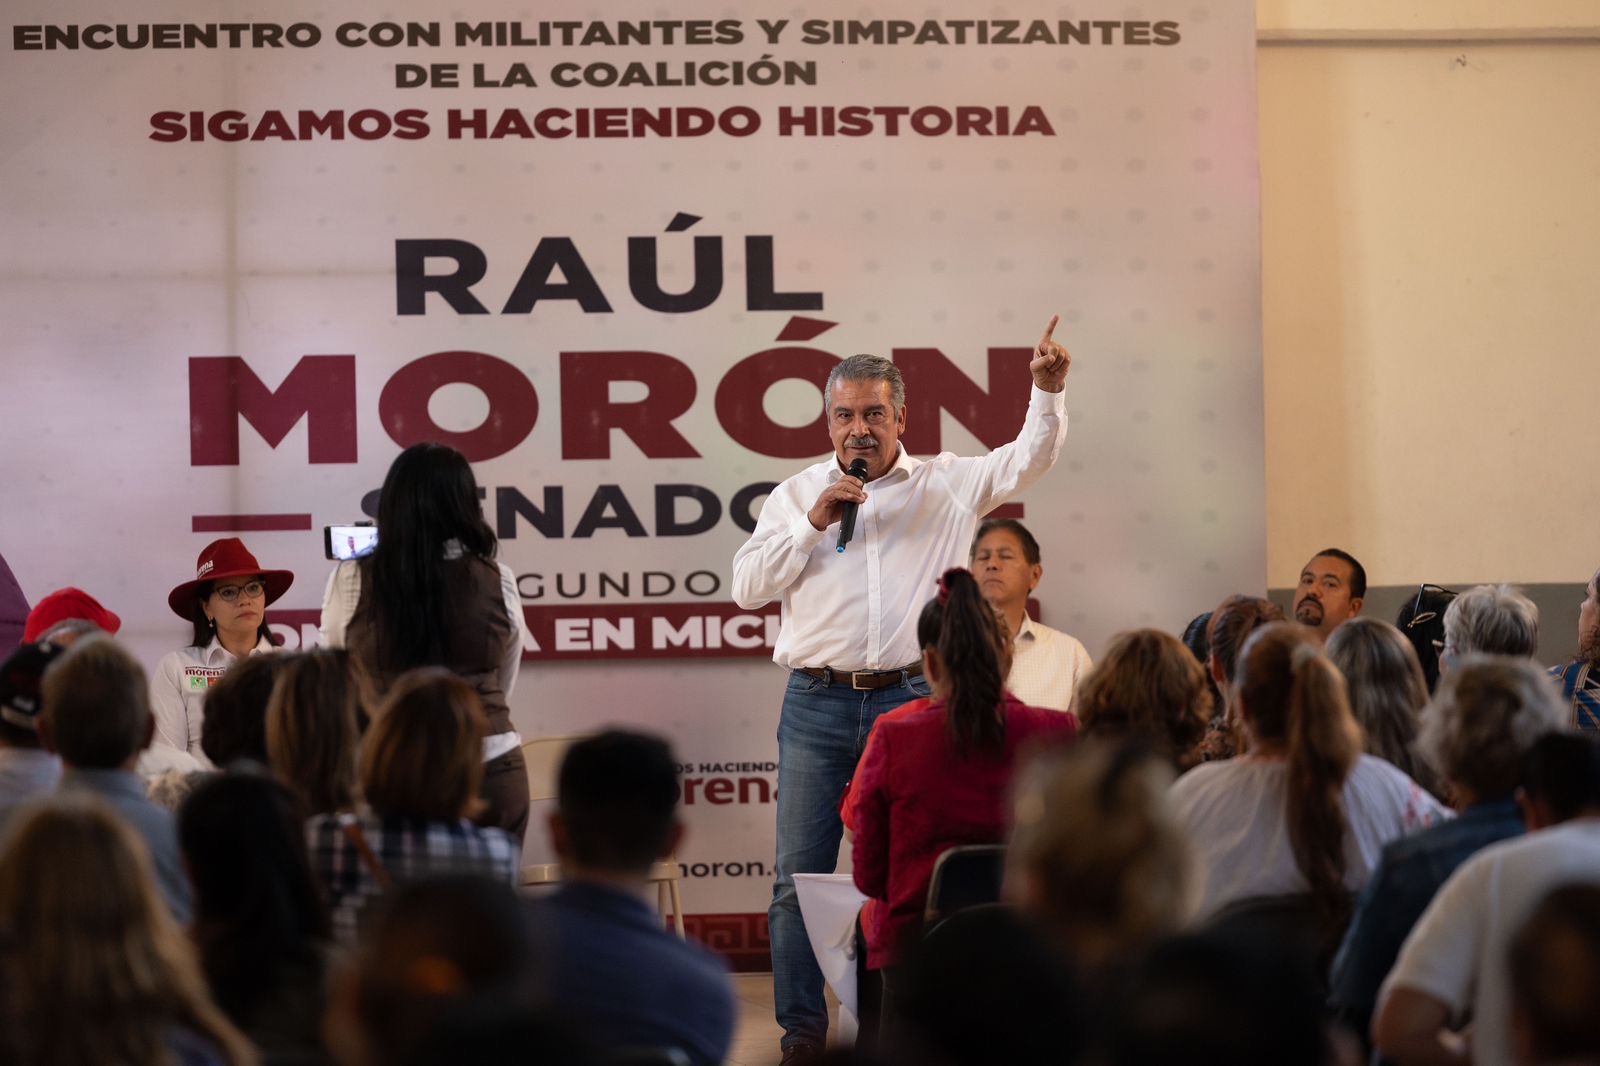 El pueblo será el autor de la transformación de Morelia y Michoacán, señala Morón